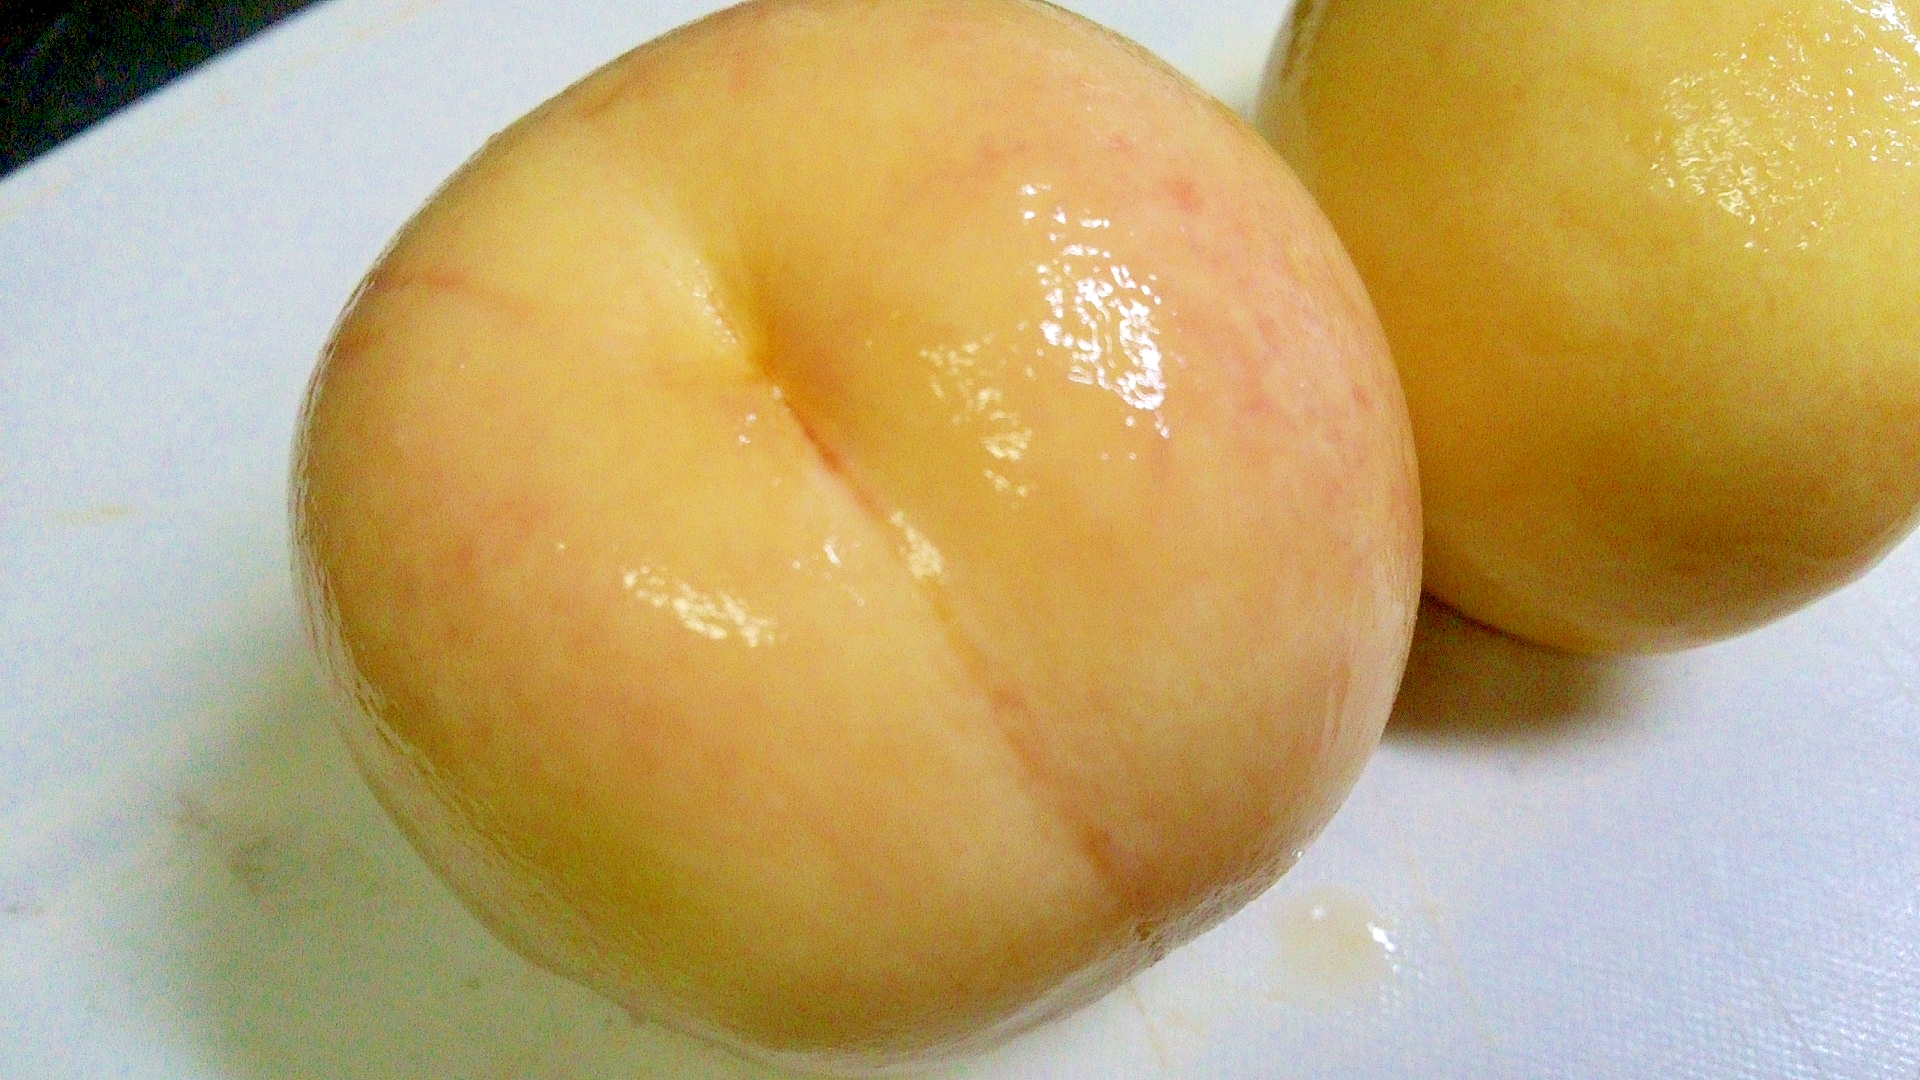 桃の皮のきれいな剥き方 - MORE-IPPIN | 毎日の献立の「もう一品」を提案するサービス